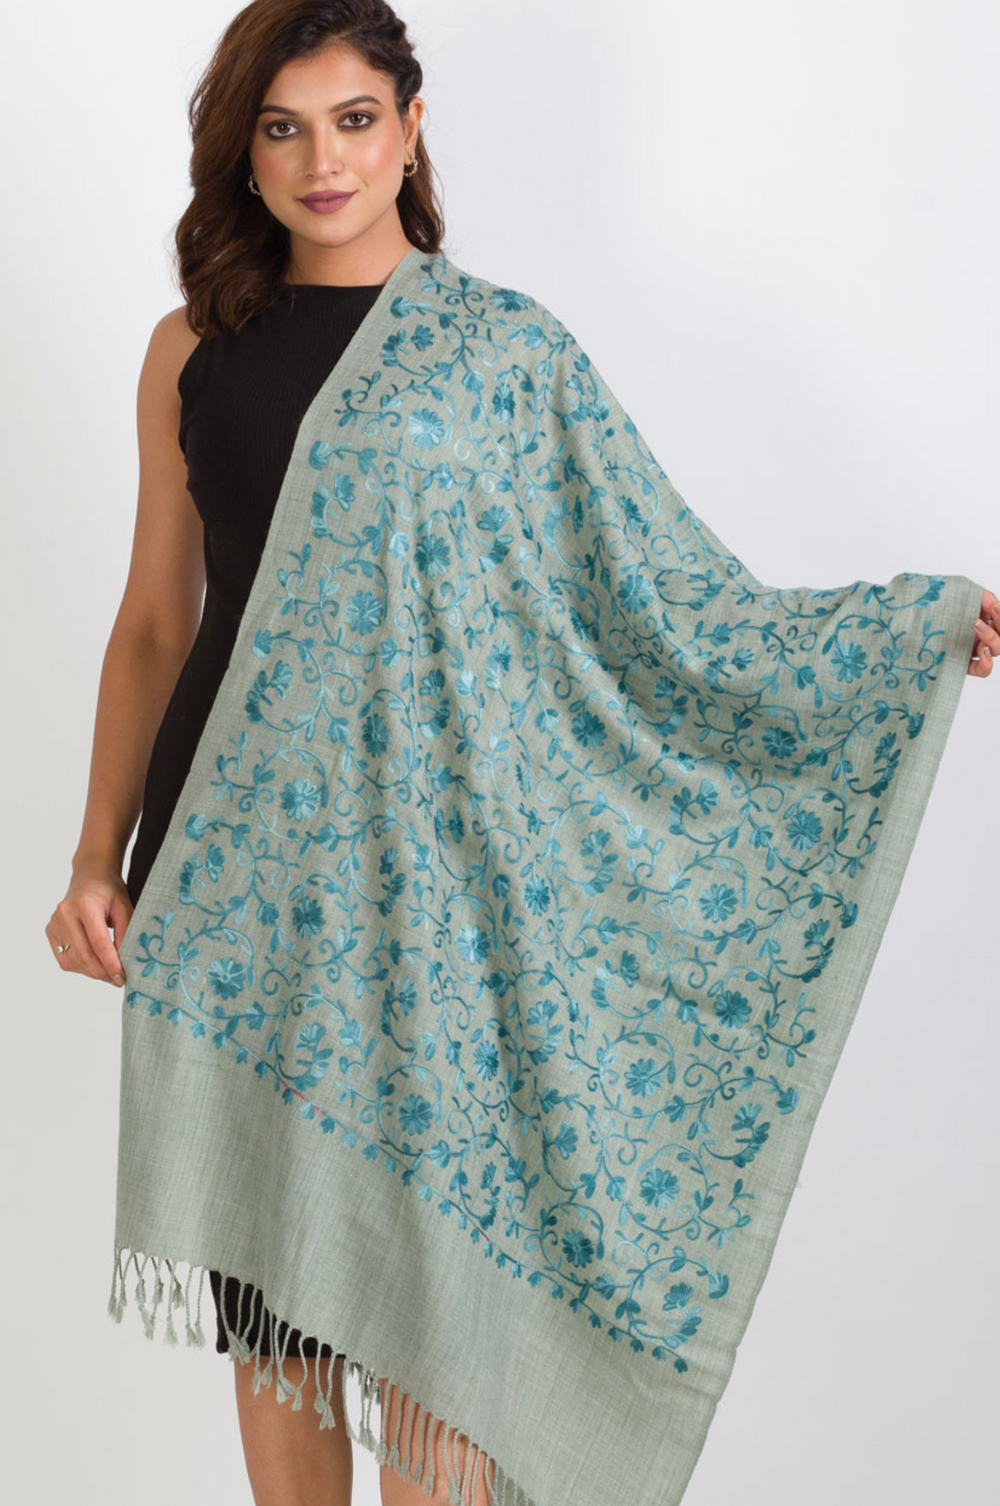 Sevya Isha shawl, embroidered (2 colors)